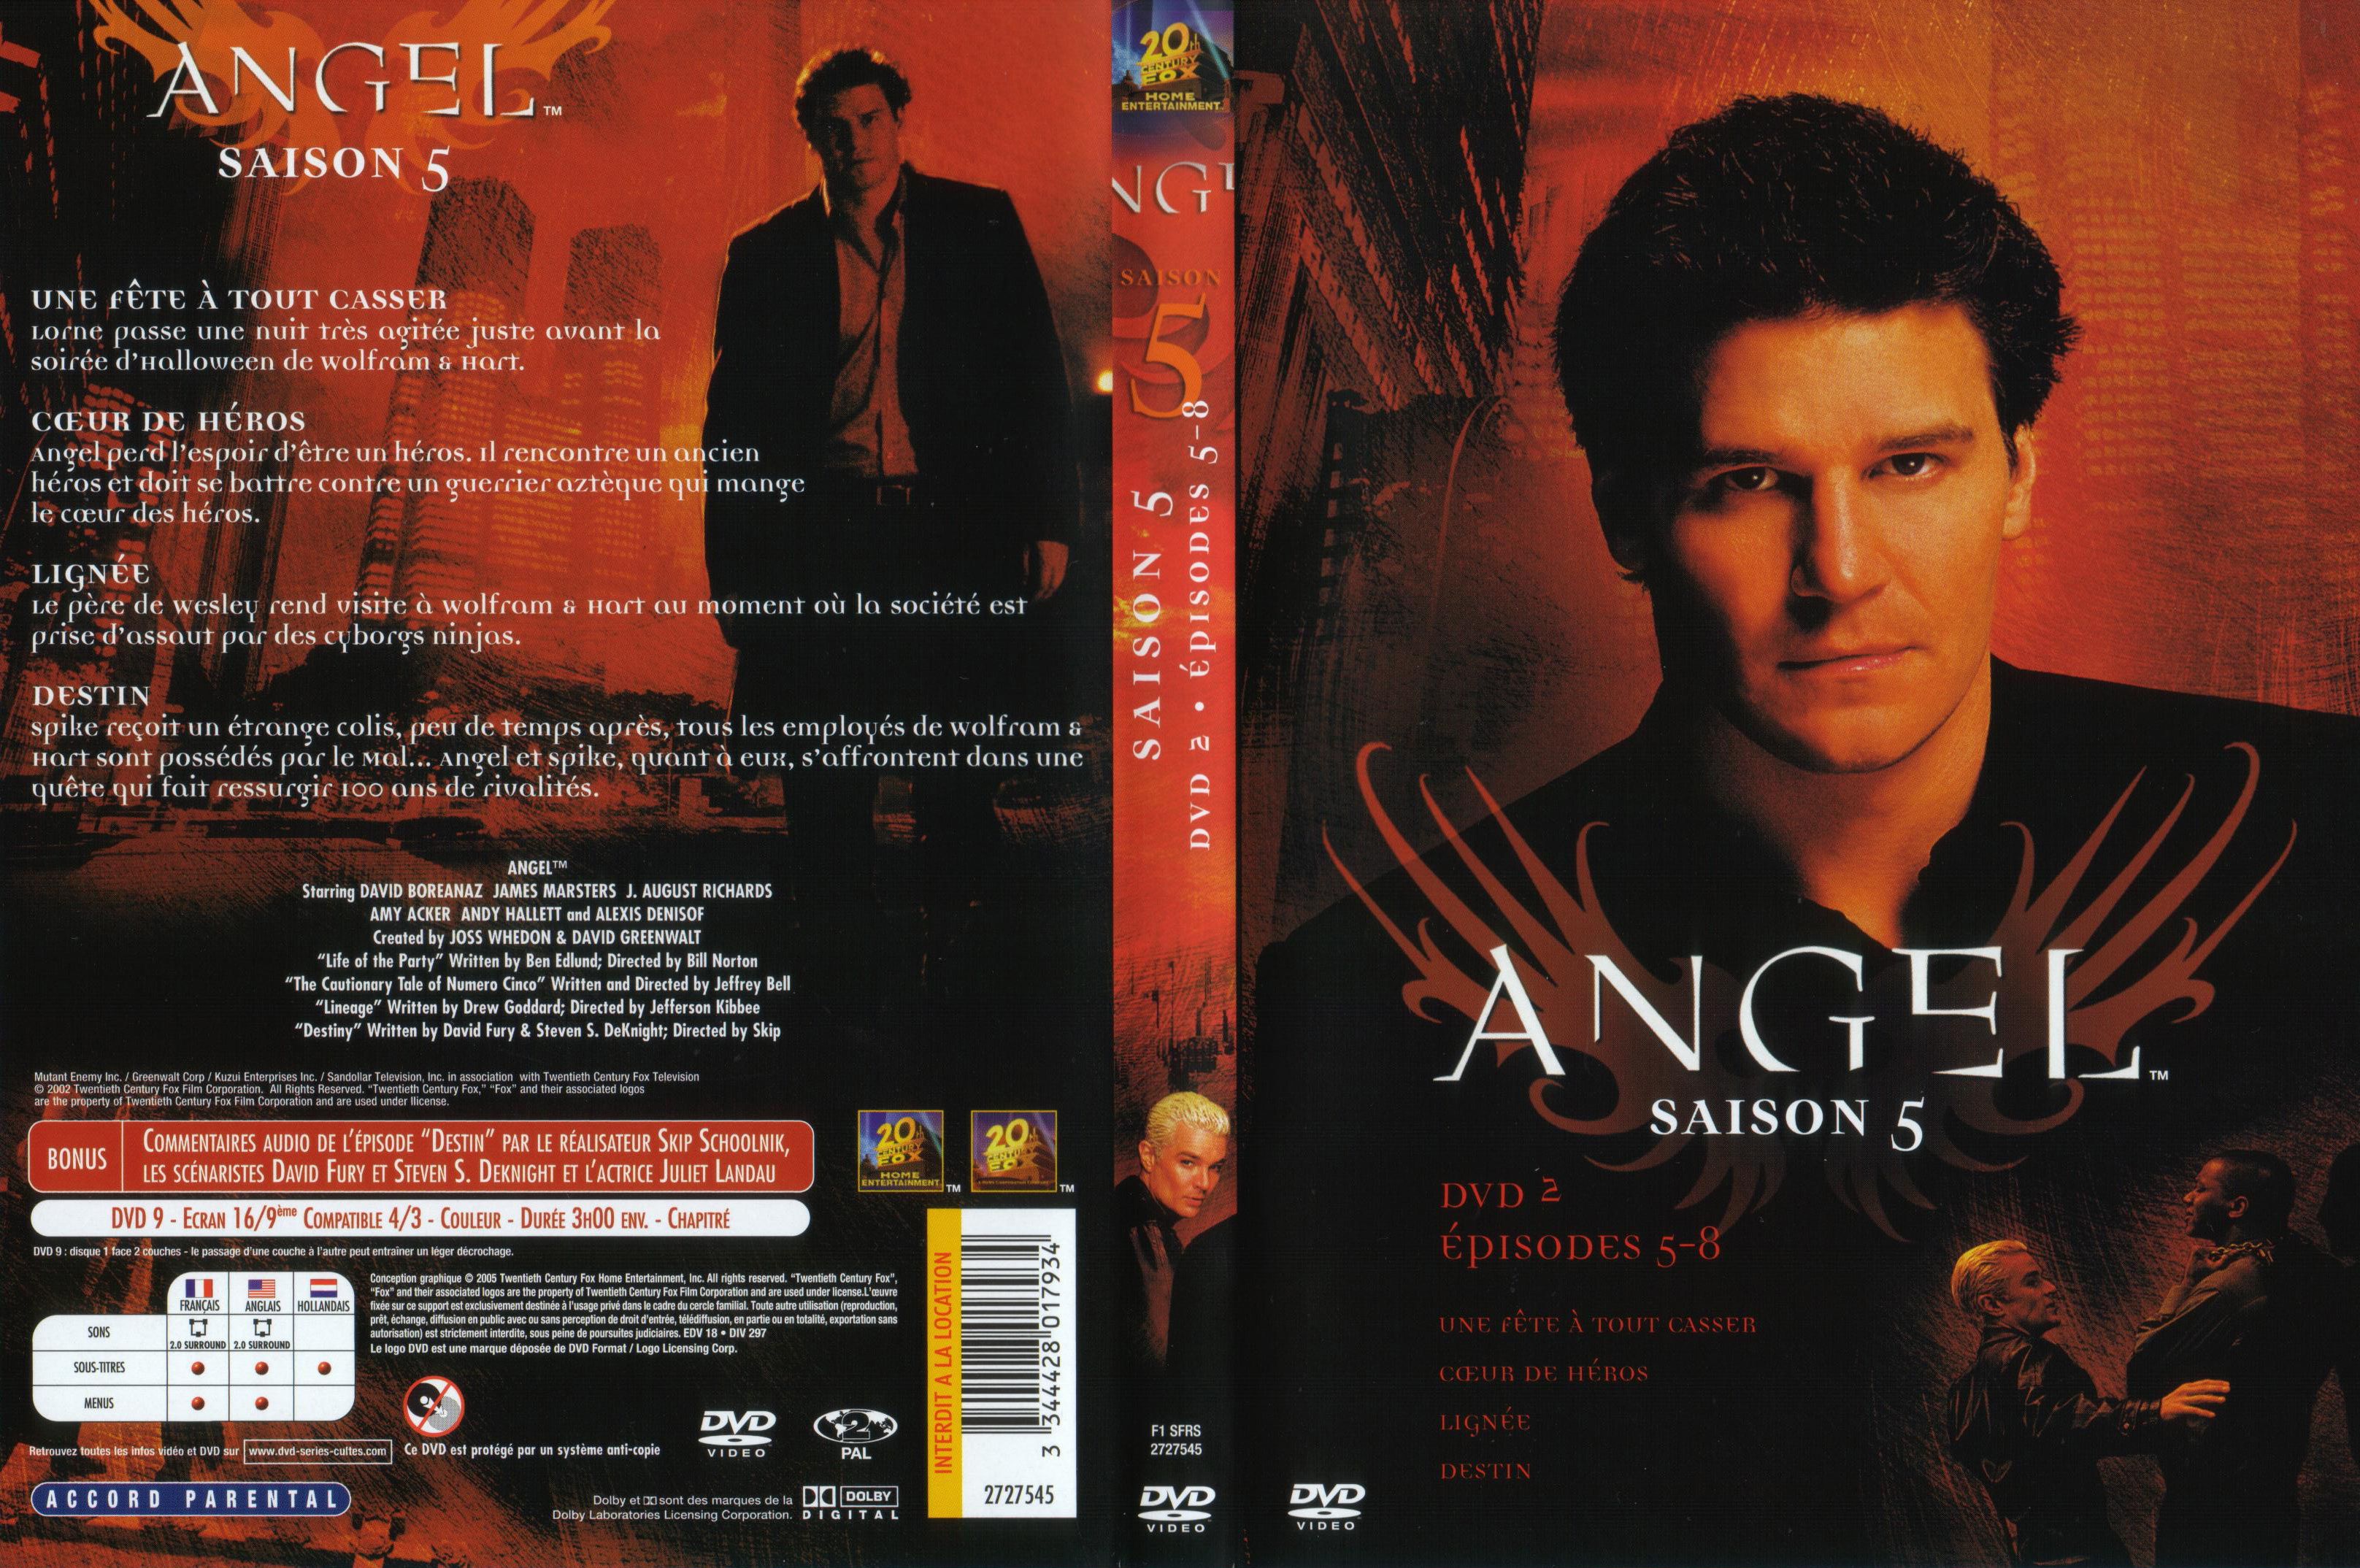 Jaquette DVD Angel Saison 5 dvd 2